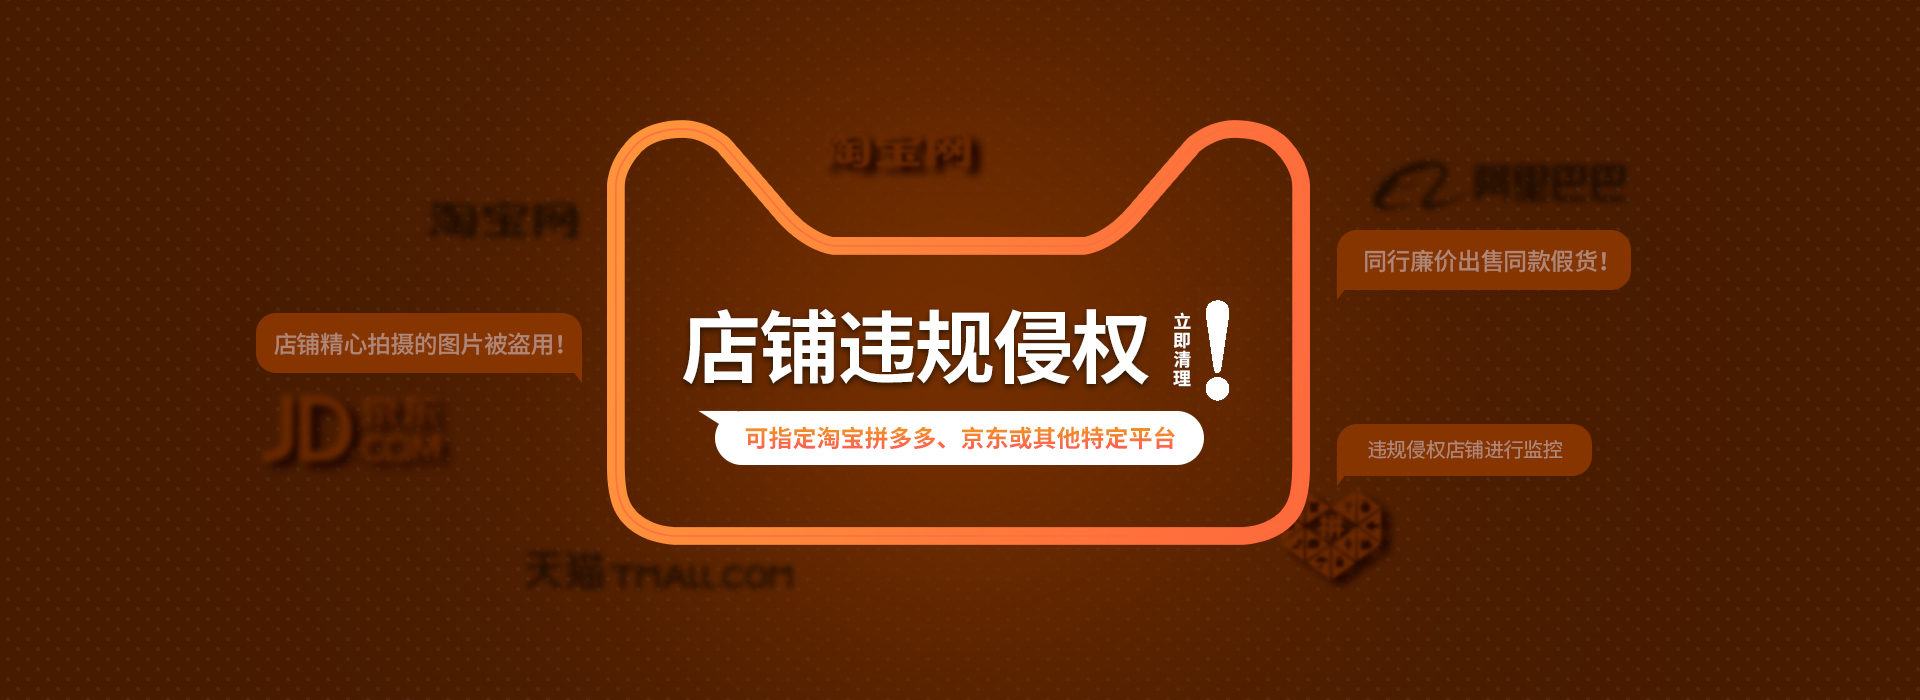 黑龙江商标侵权法律咨询 上海尚士华律师供应